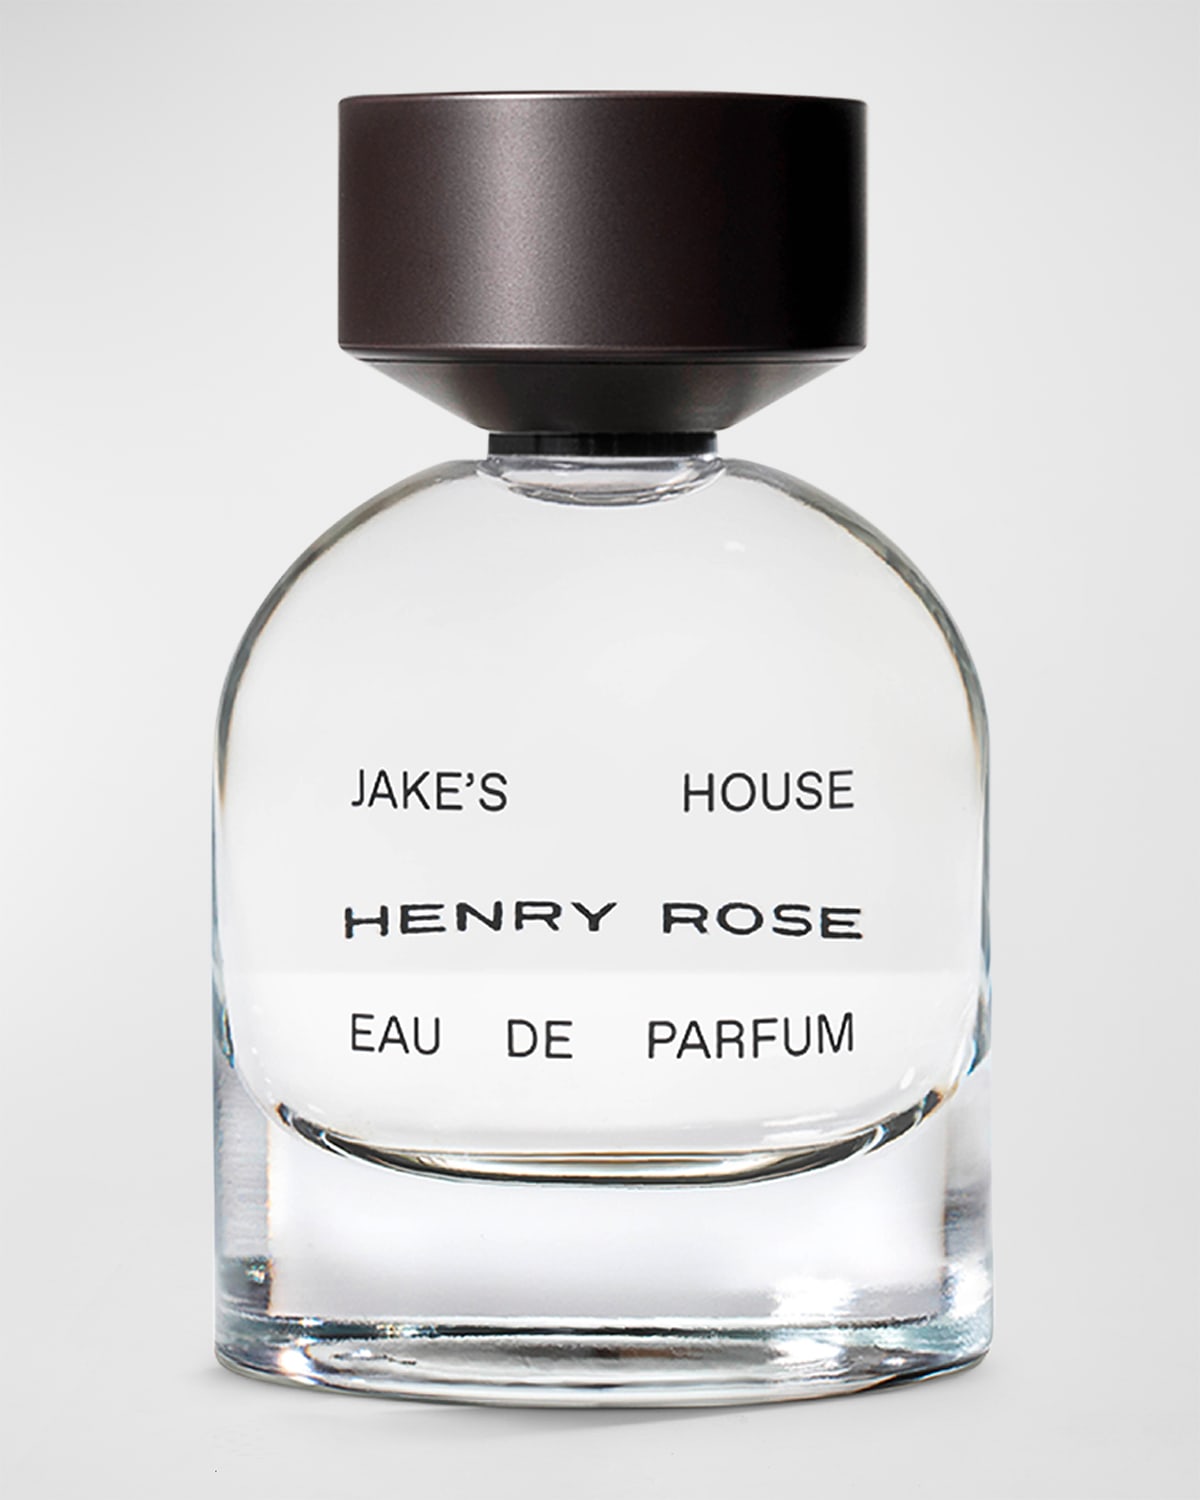 HENRY ROSE Jake's House Eau de Parfum, 1.7 oz.